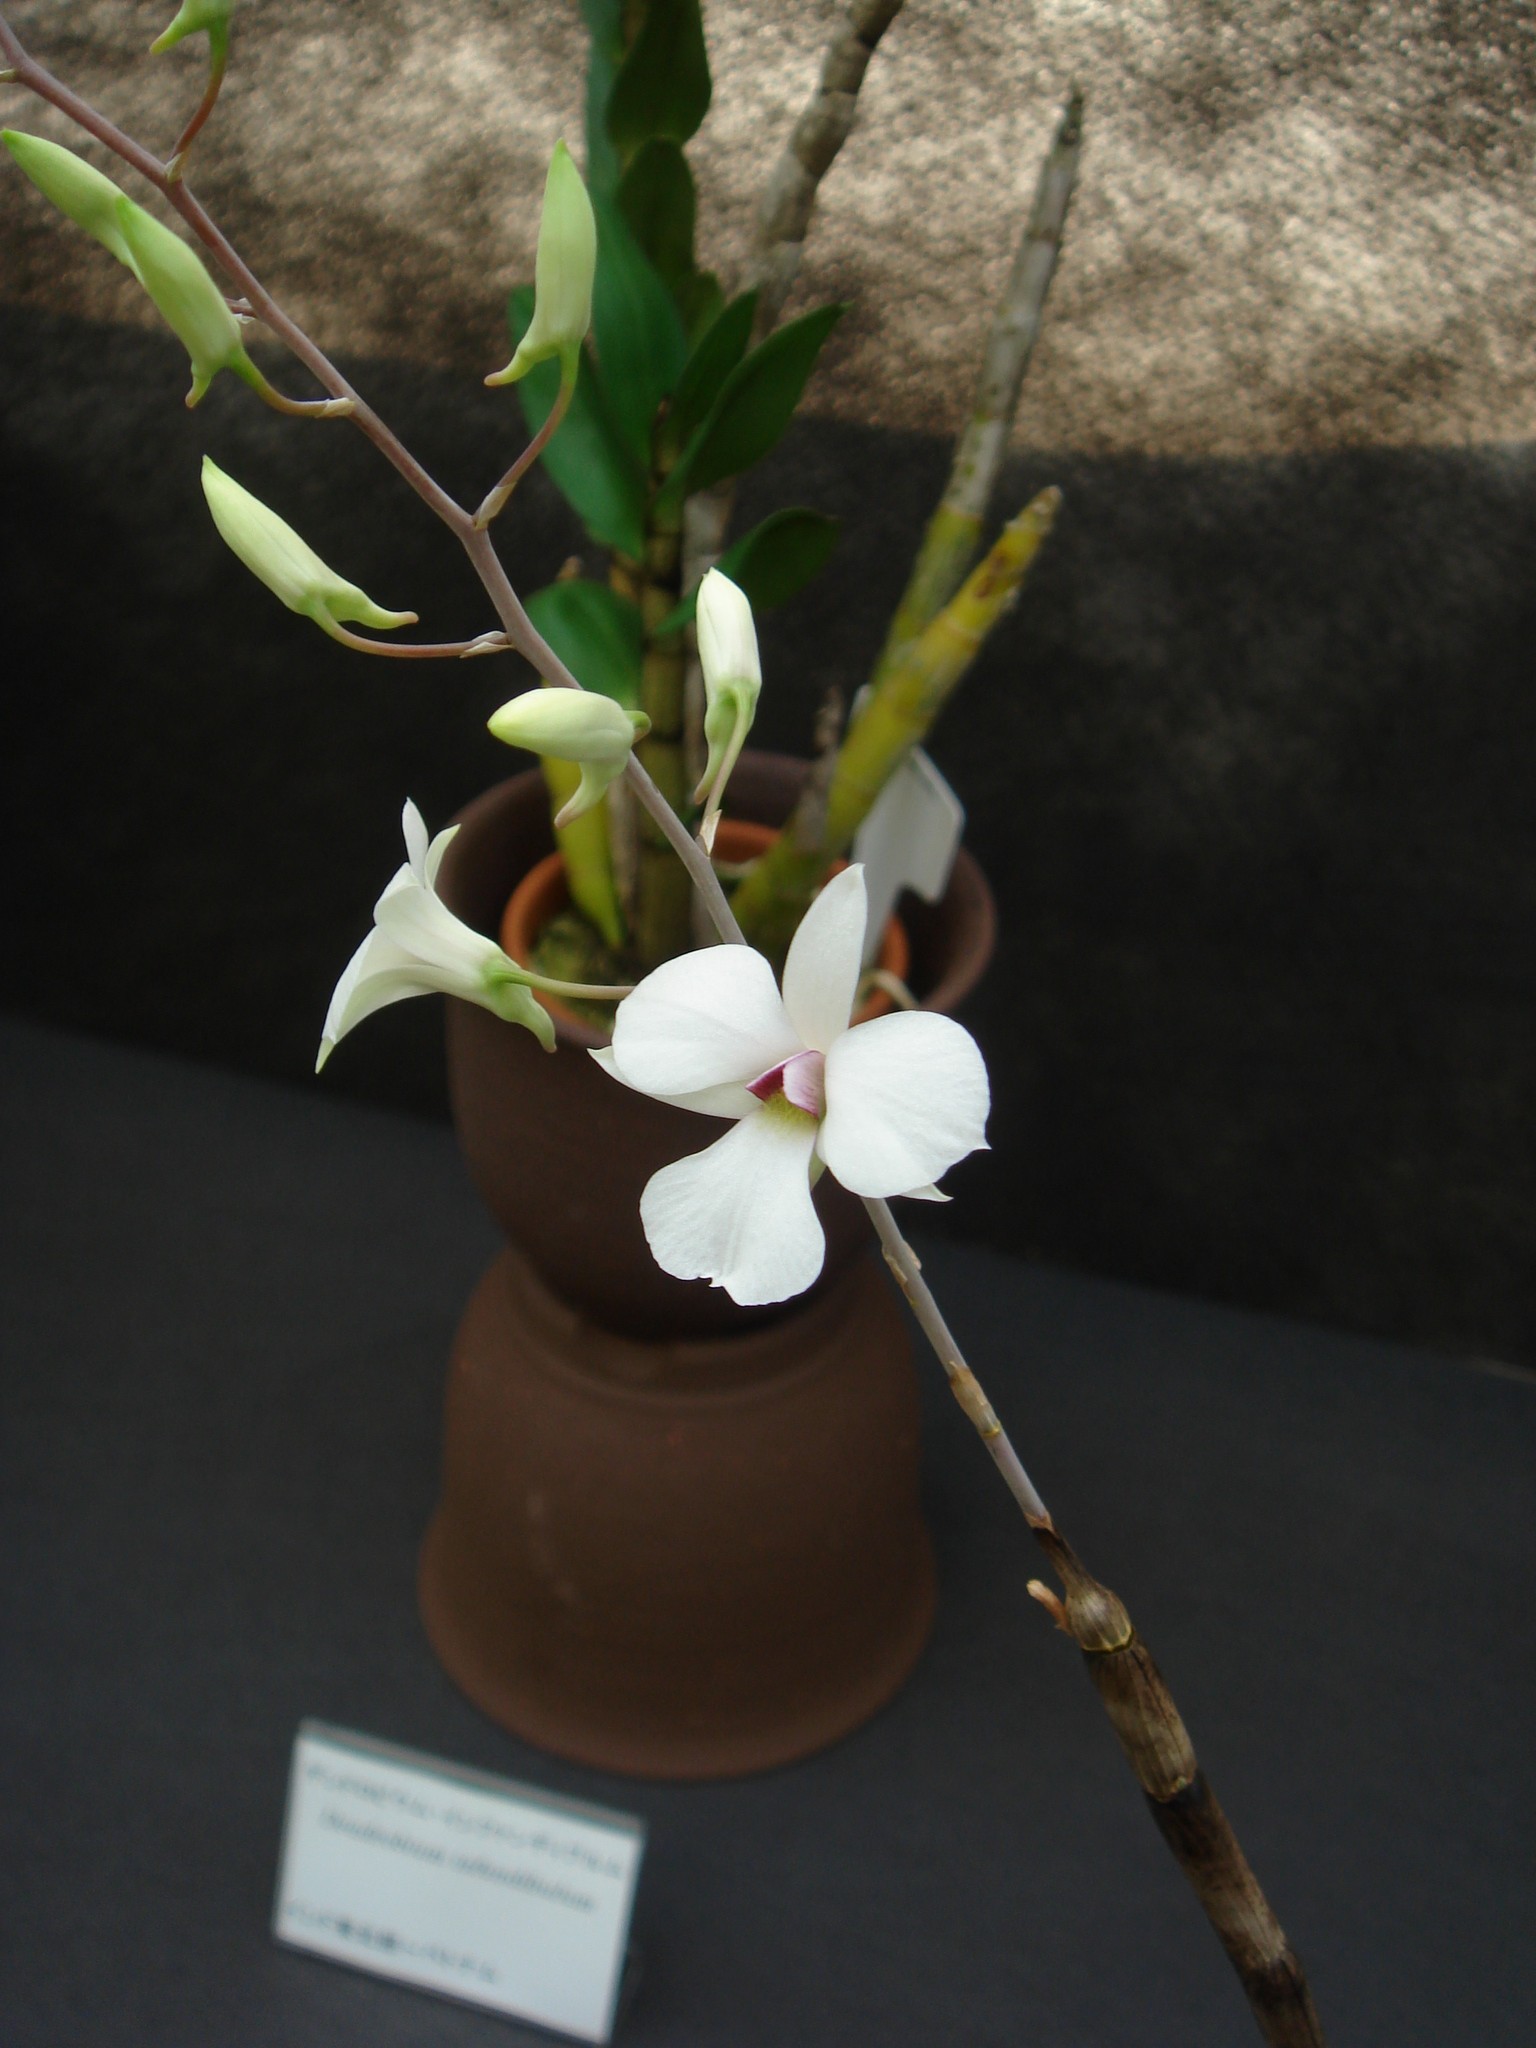 http://orchids.la.coocan.jp/Dendrobium/Dendrobium%20fytchianum/DSC01951.JPG